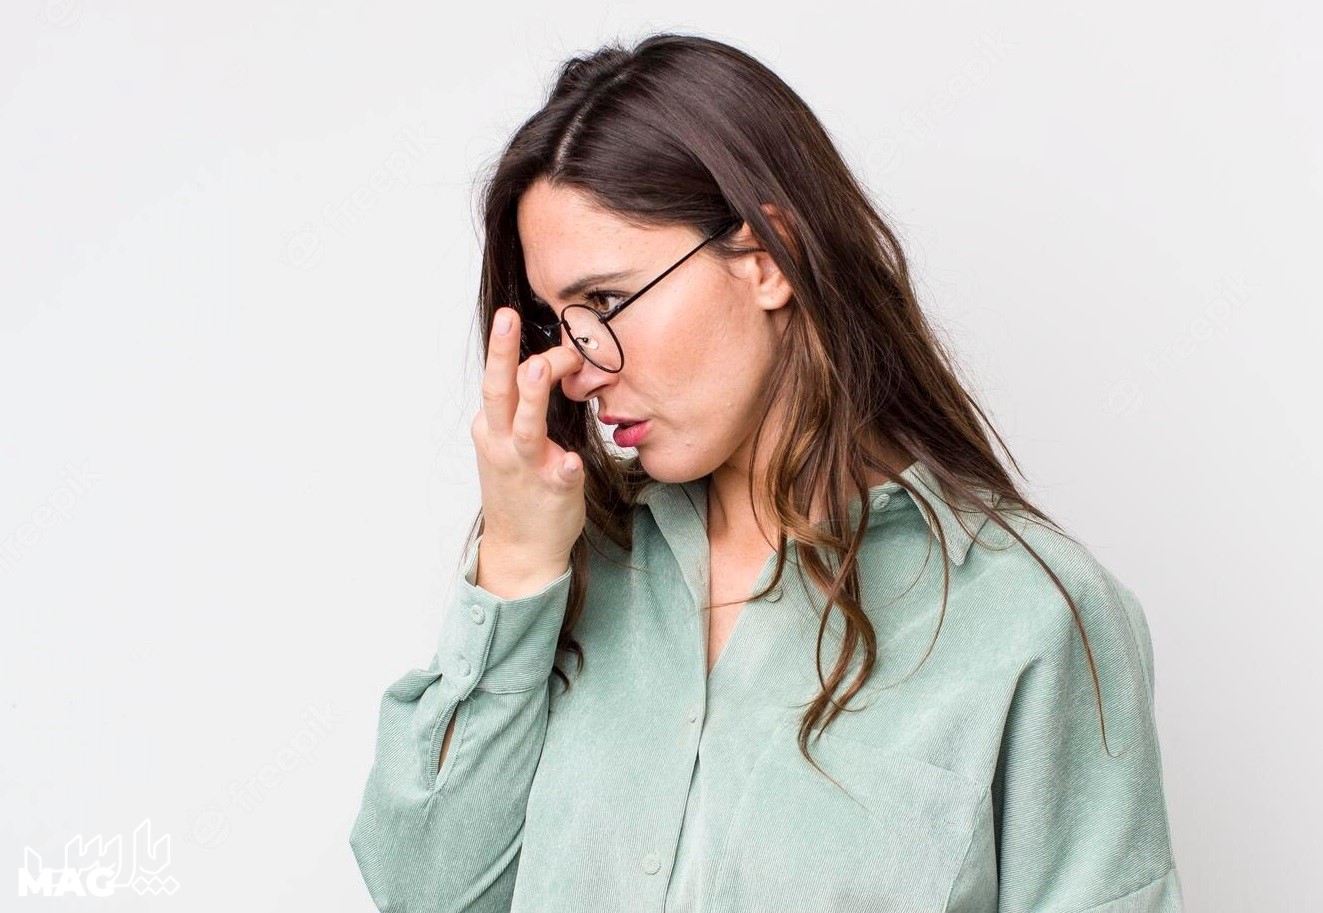 ضعیف شدن چشم -درمان خانگی سردرد پیشانی و چشم